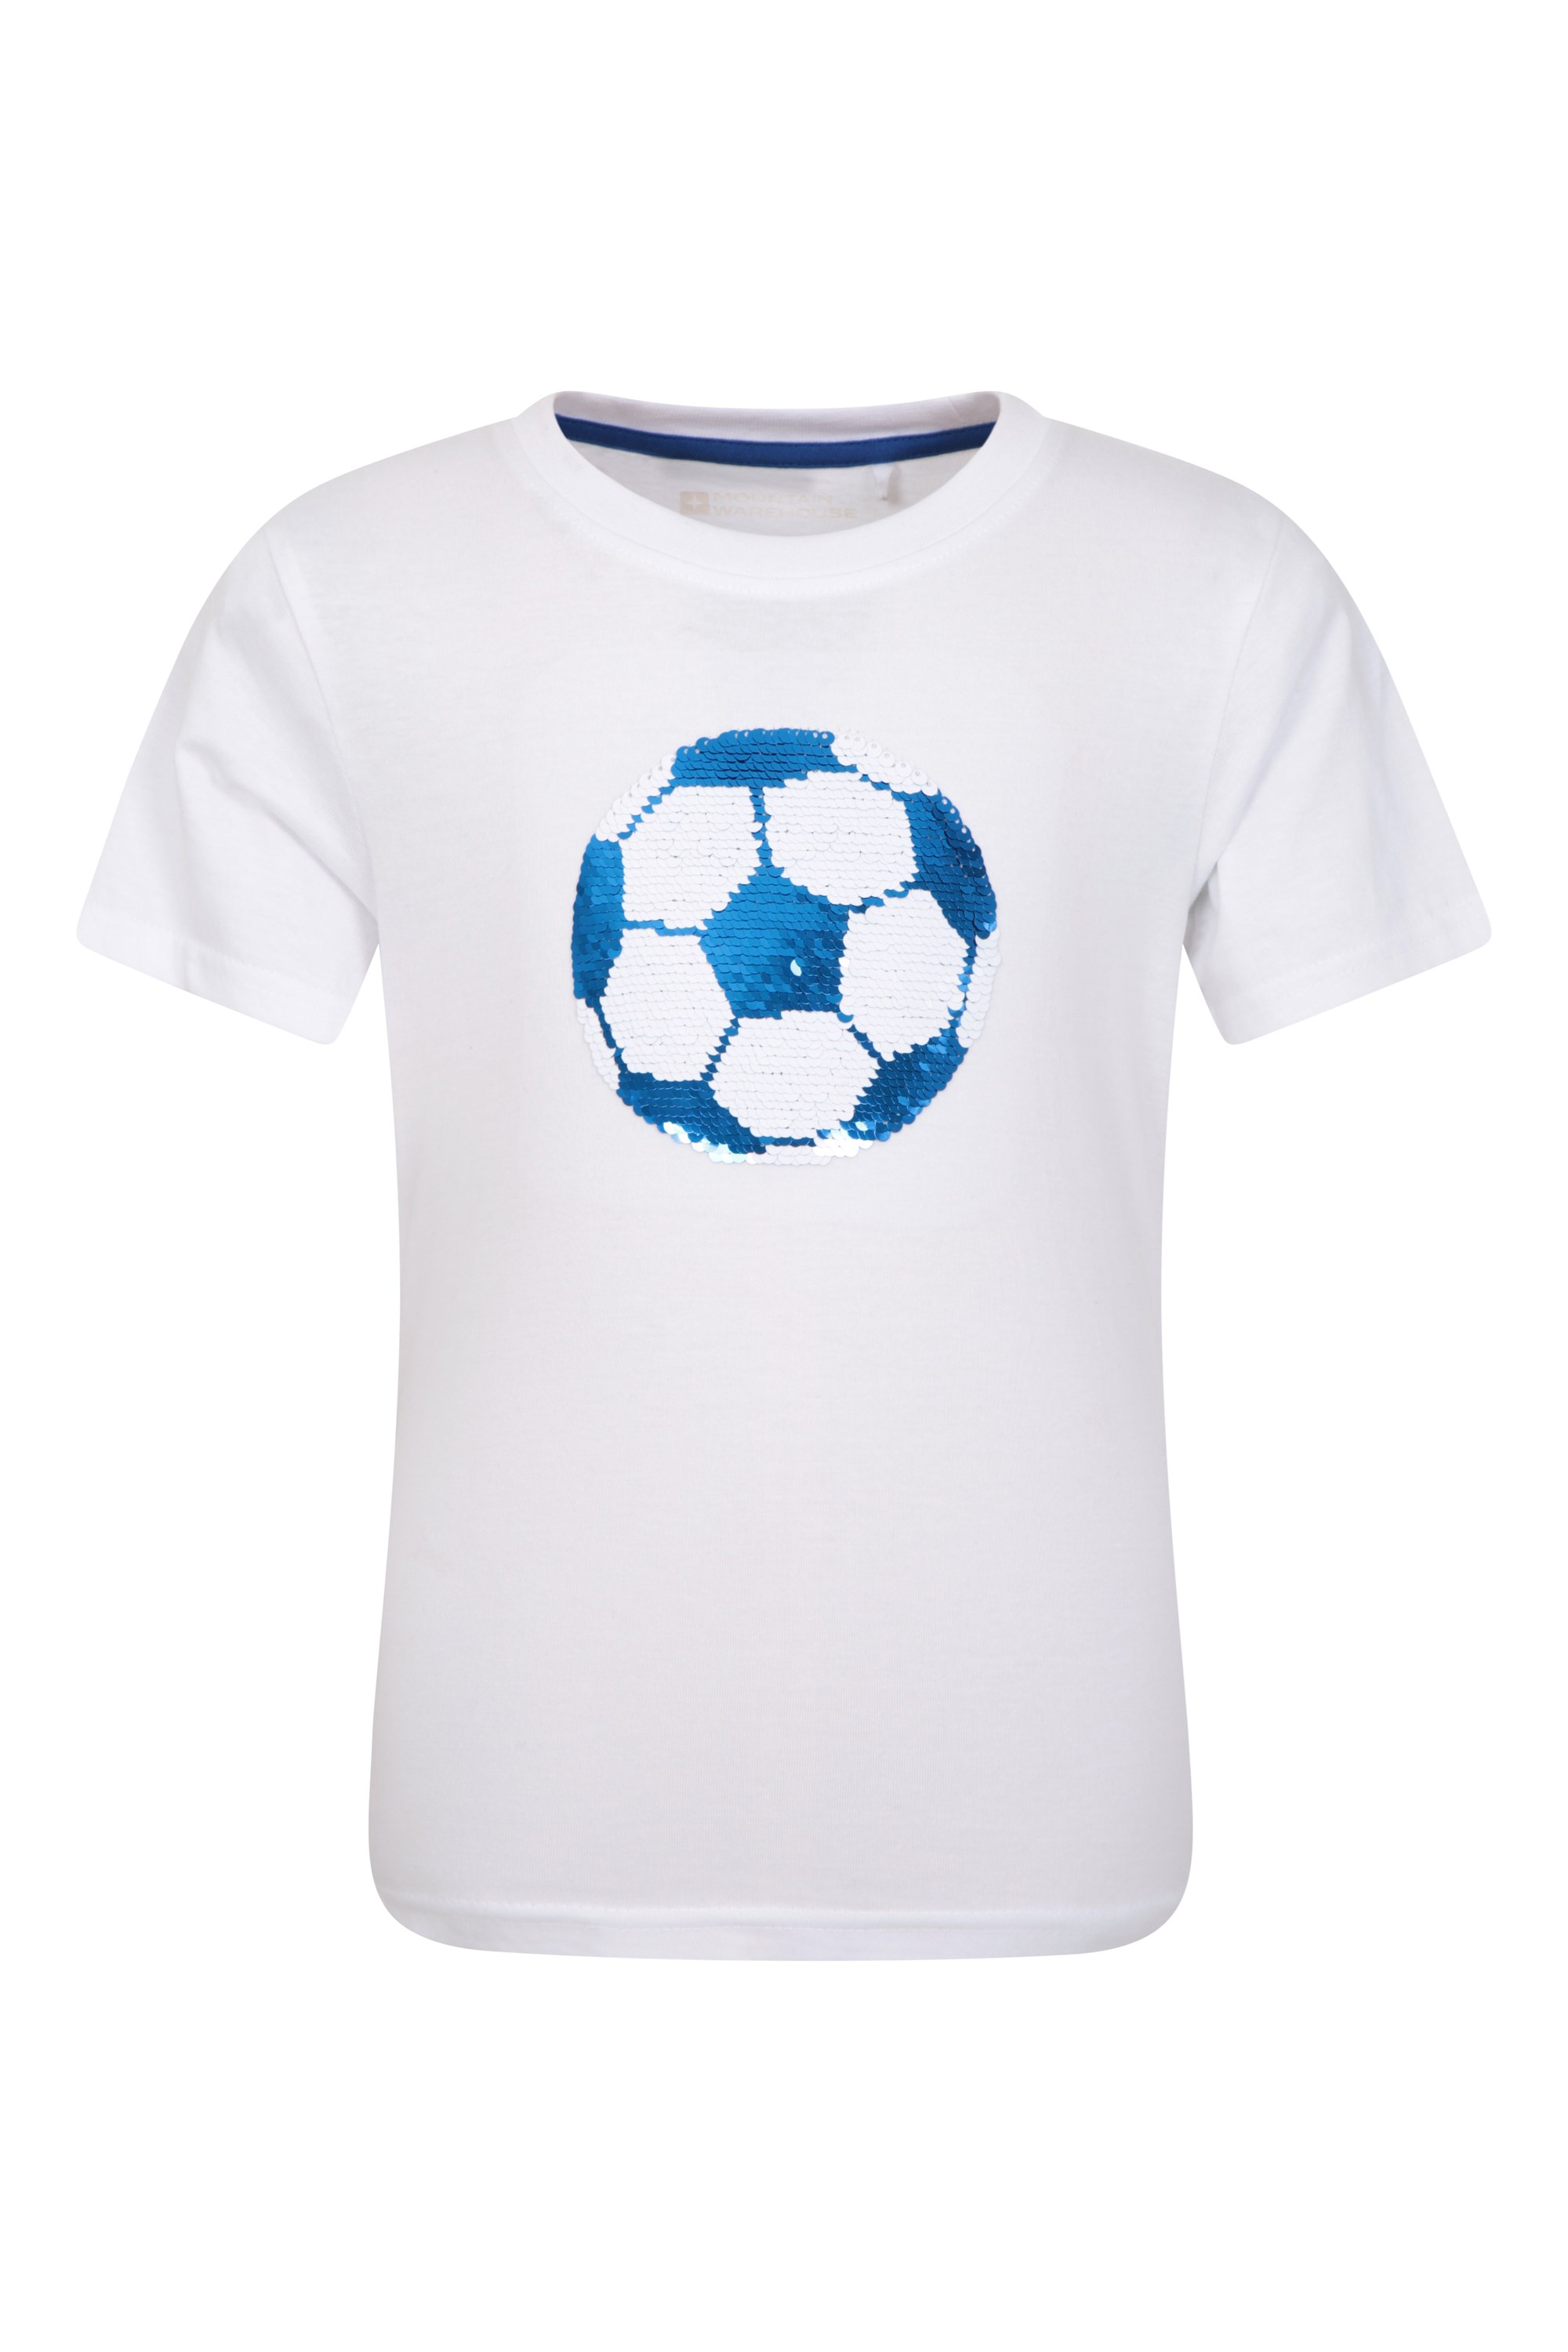 Tee-shirt Football à paillettes enfant - Blanc